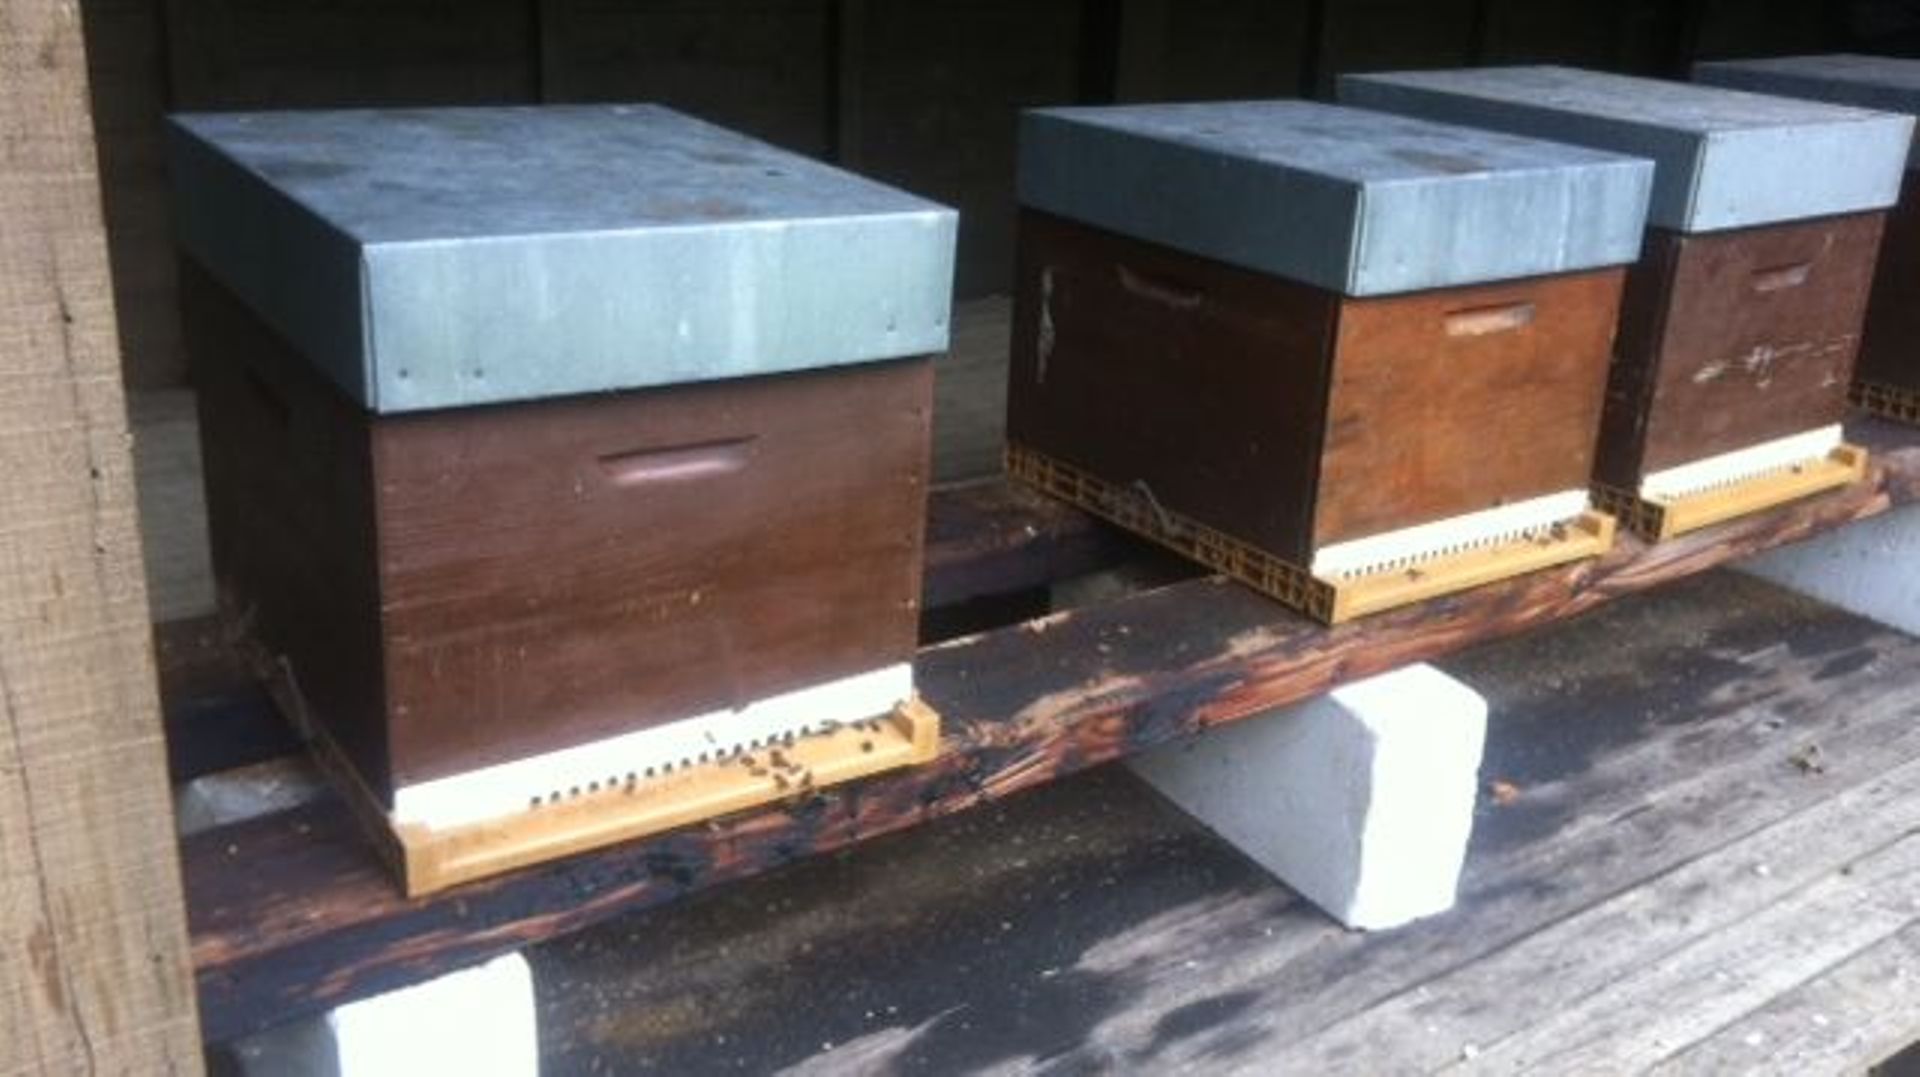 250 apiculteurs élèvent cette race, principalement dans la région de Chimay, mais pas seulement